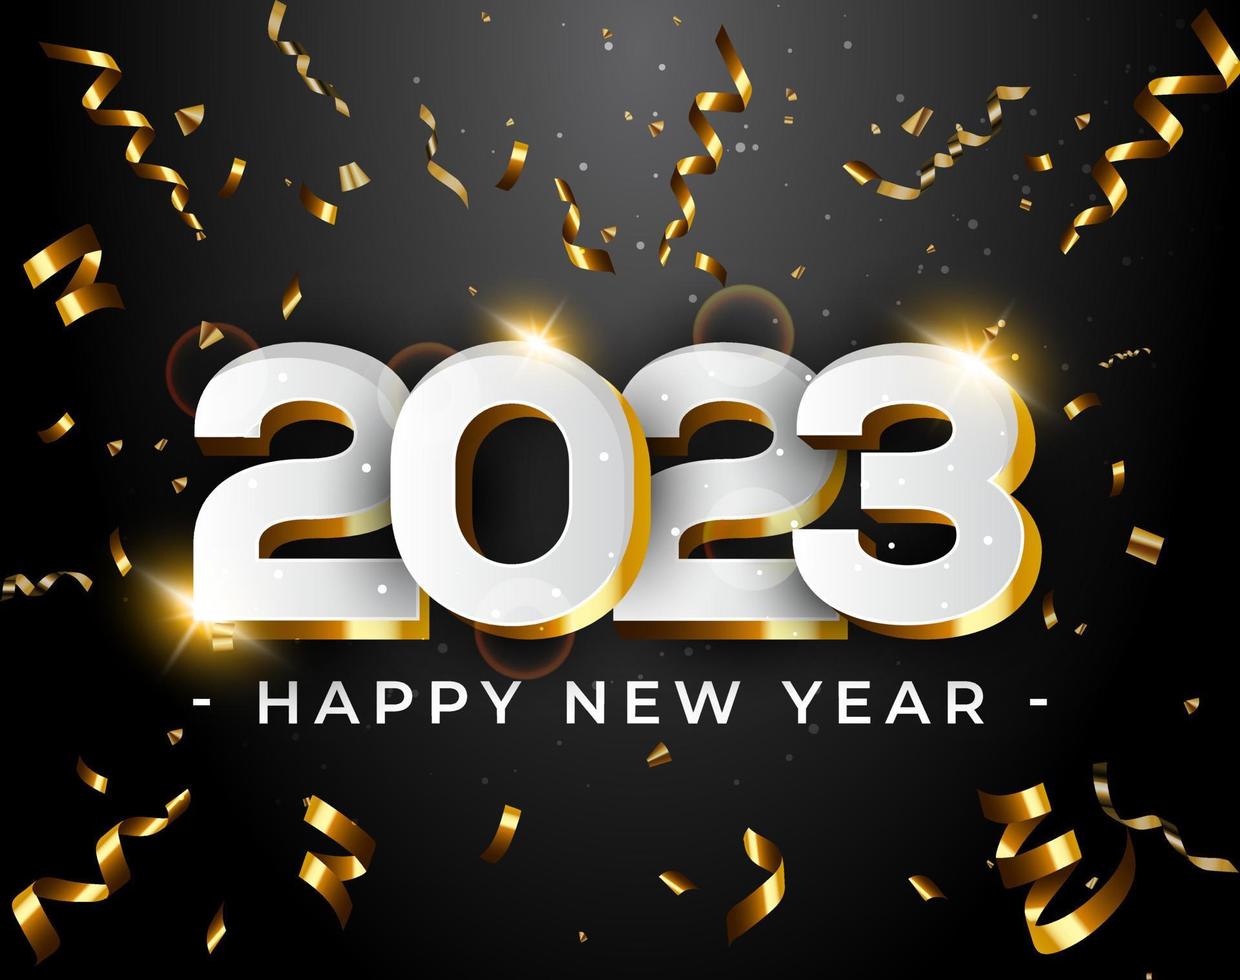 mejor feliz año nuevo 2023. número de lujo blanco arriba-abajo con cintas doradas, fondo nocturno colorido fondo oscuro, plantilla de tarjeta de diseño de texto creativo digital premium feliz año nuevo 2023. vector